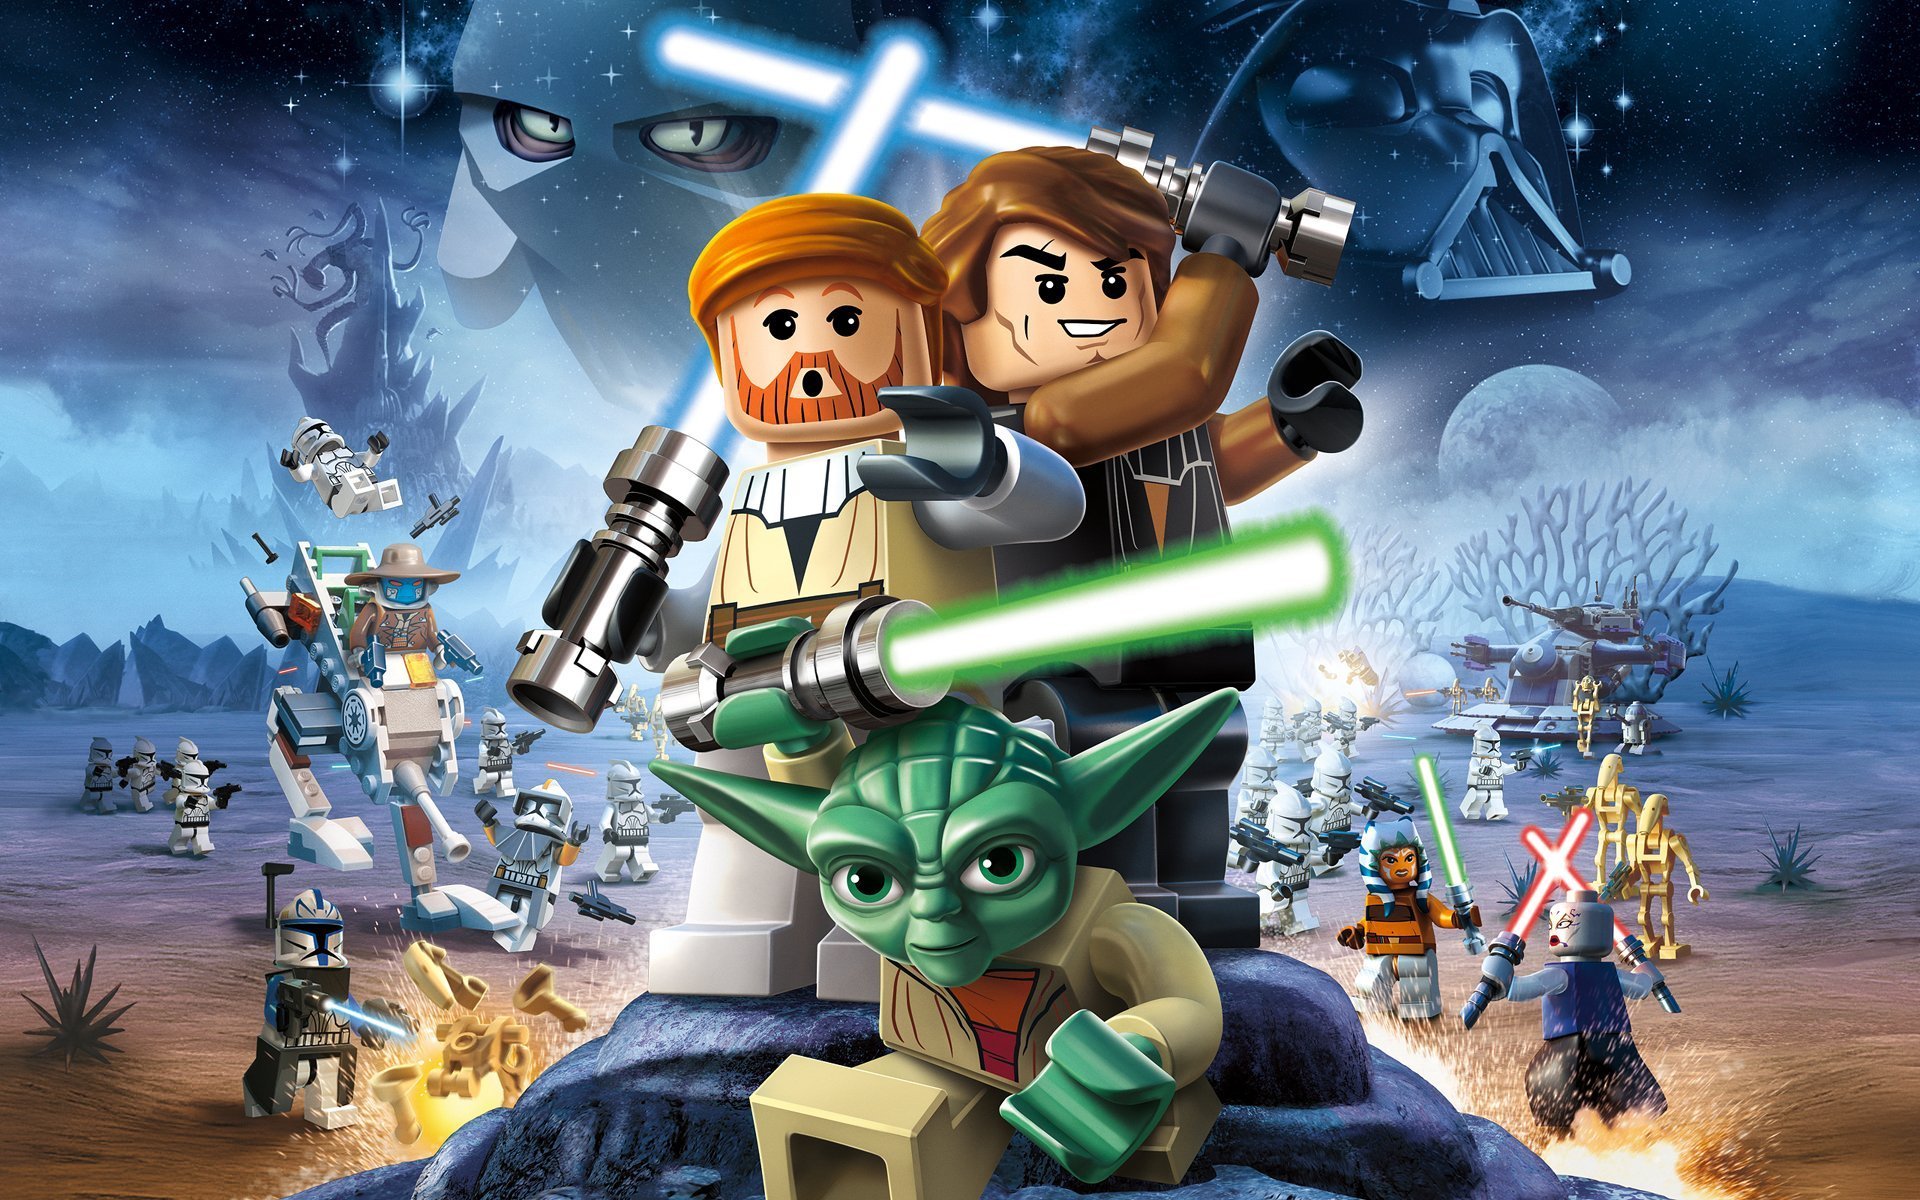 Lego star wars 3 the clone wars русификатор для steam фото 9